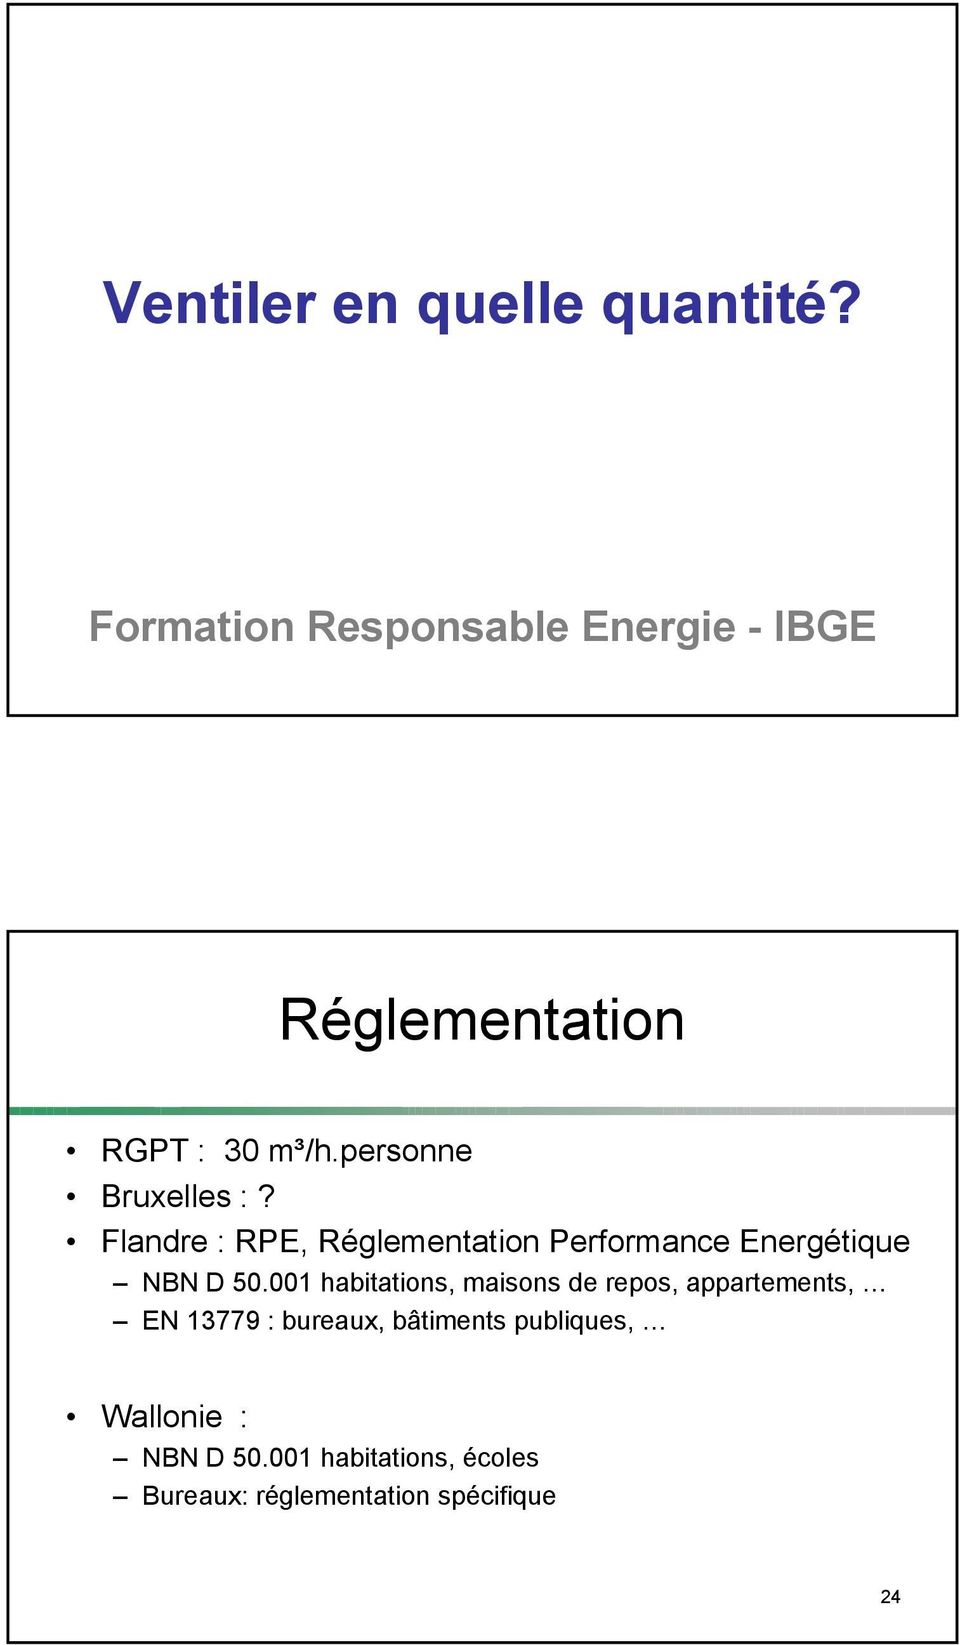 Flandre : RPE, Réglementation Performance Energétique NBN D 50.